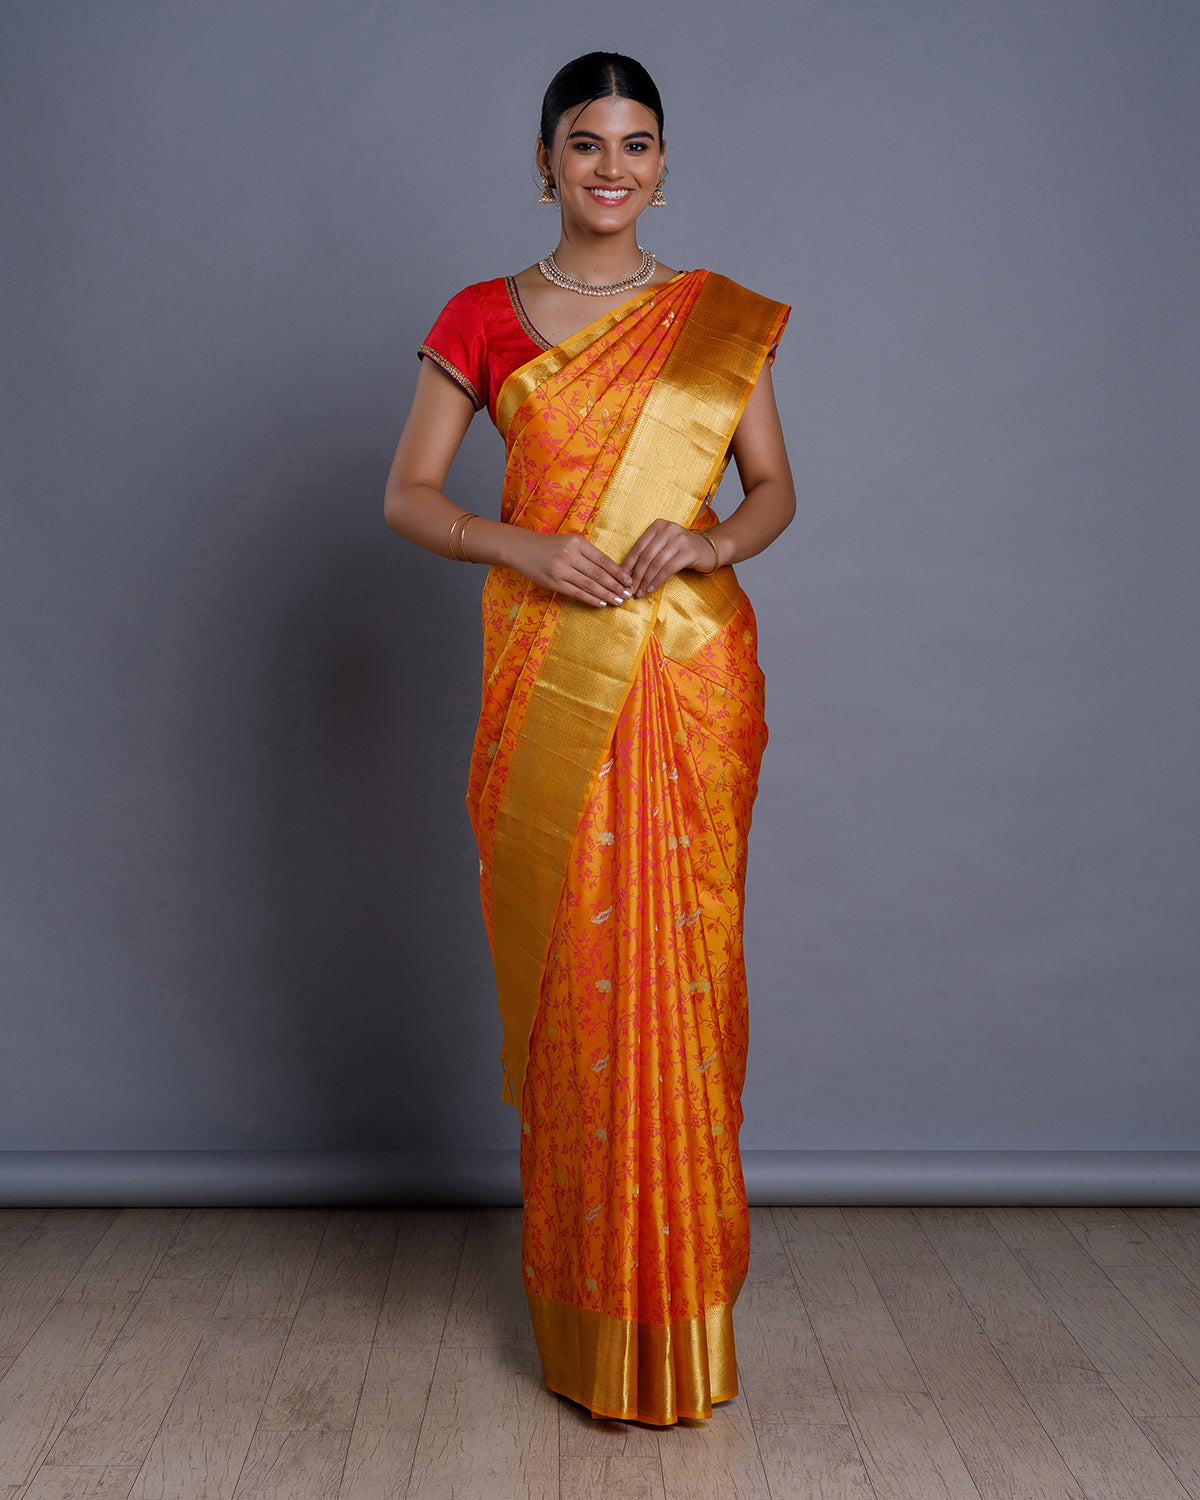 Yellow Silk Saree Cheap & Best Anusree Nair in a Mustard Yellow Silk Saree!  - Best Indian Collection Saree - Gia Designer